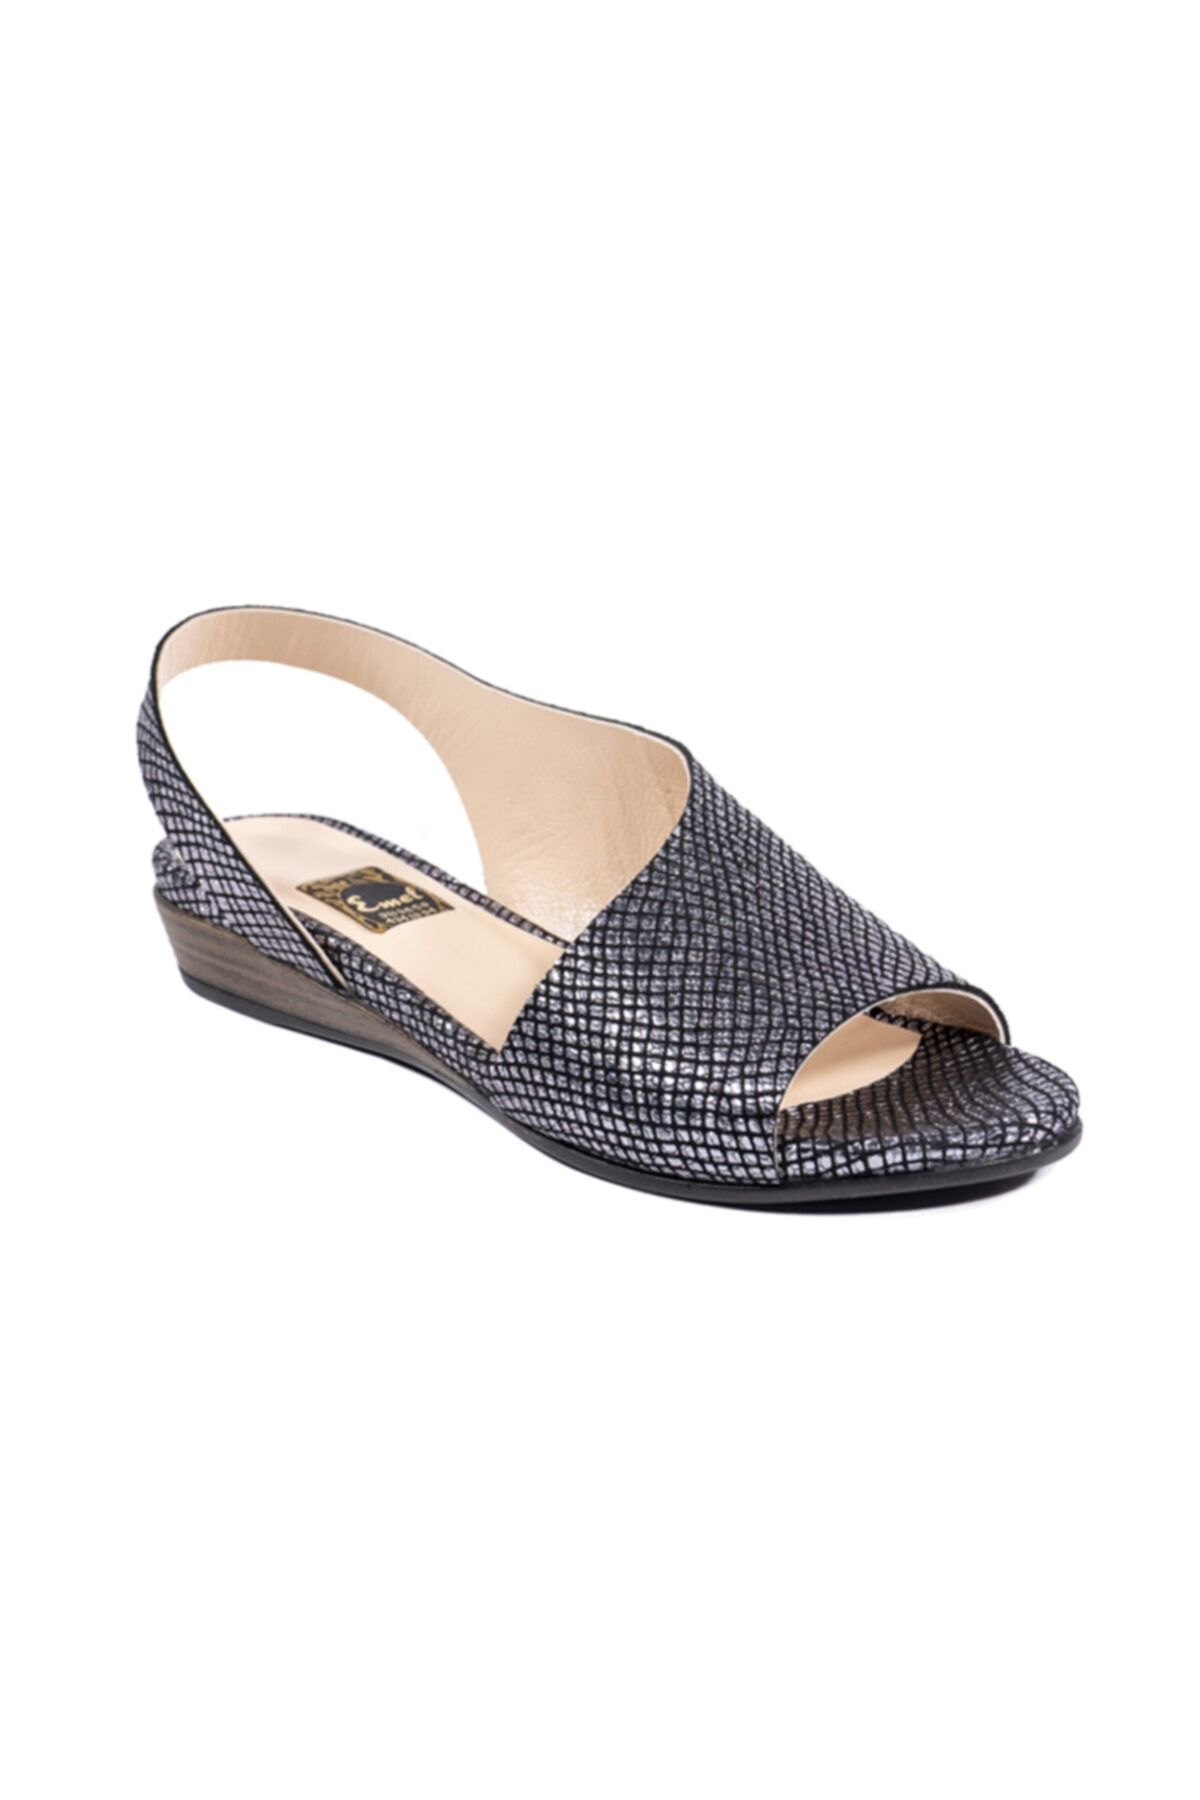 Emel Ayakkabı Kadın Bronz Günlük Modern Rahat Tarz Sandalet